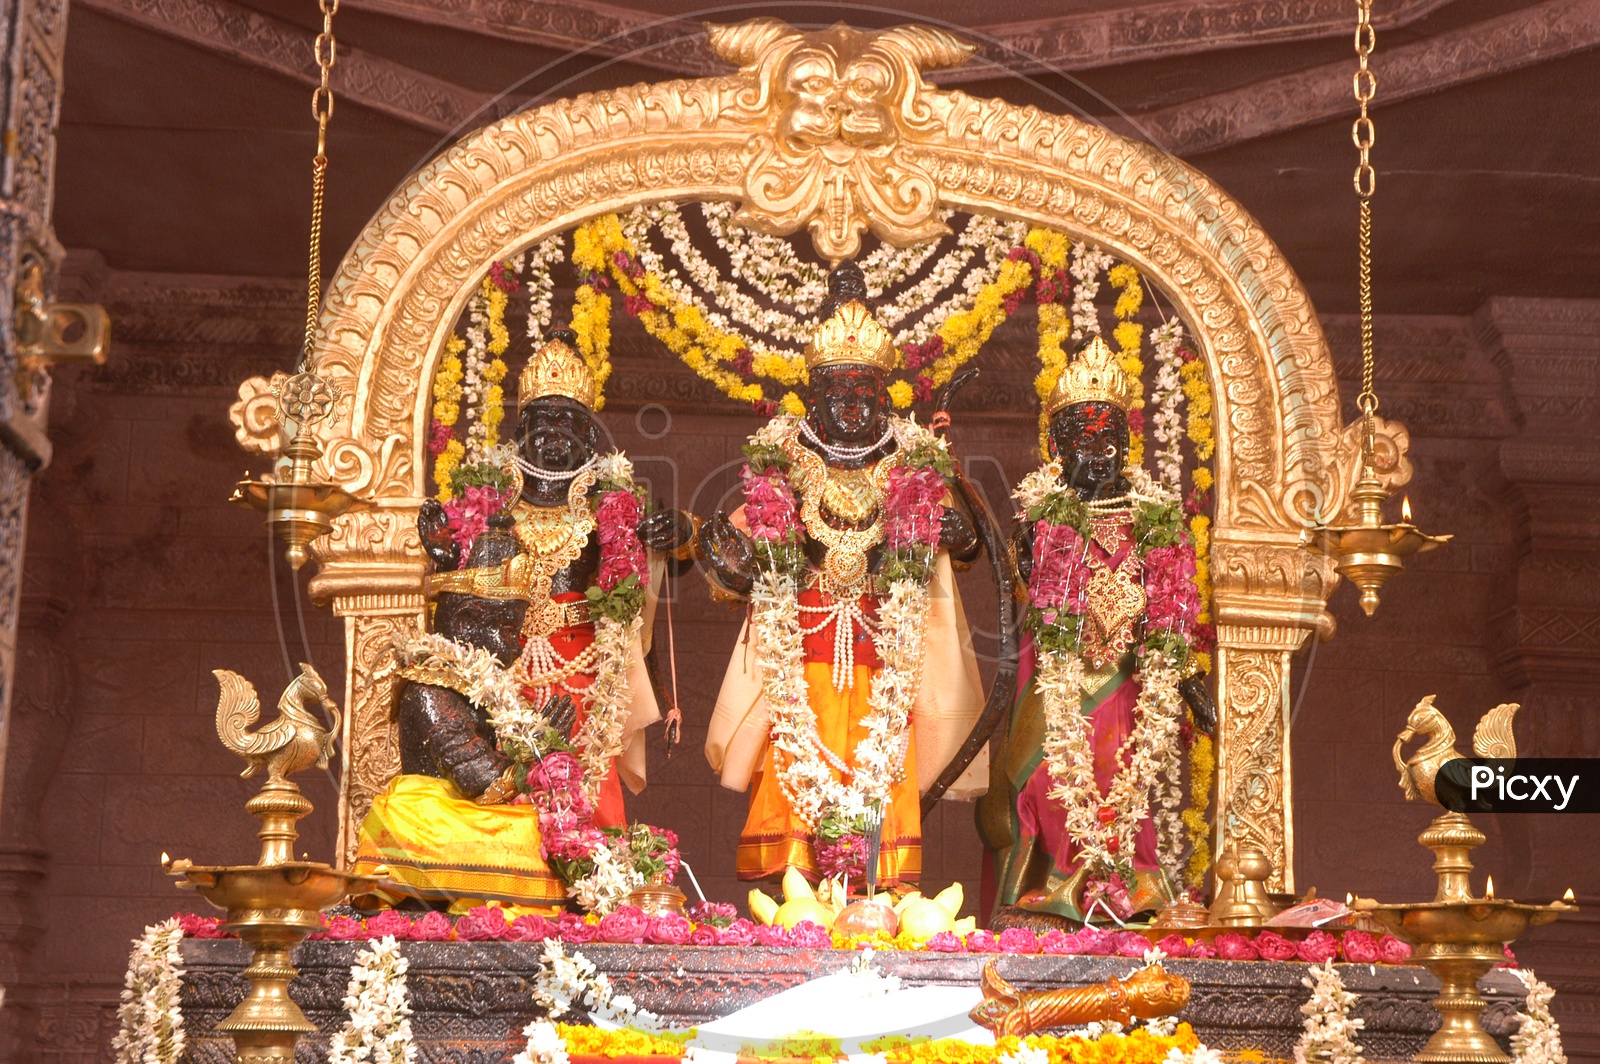 Lord Sri Rama Sita and Laxman Idols in a Temple